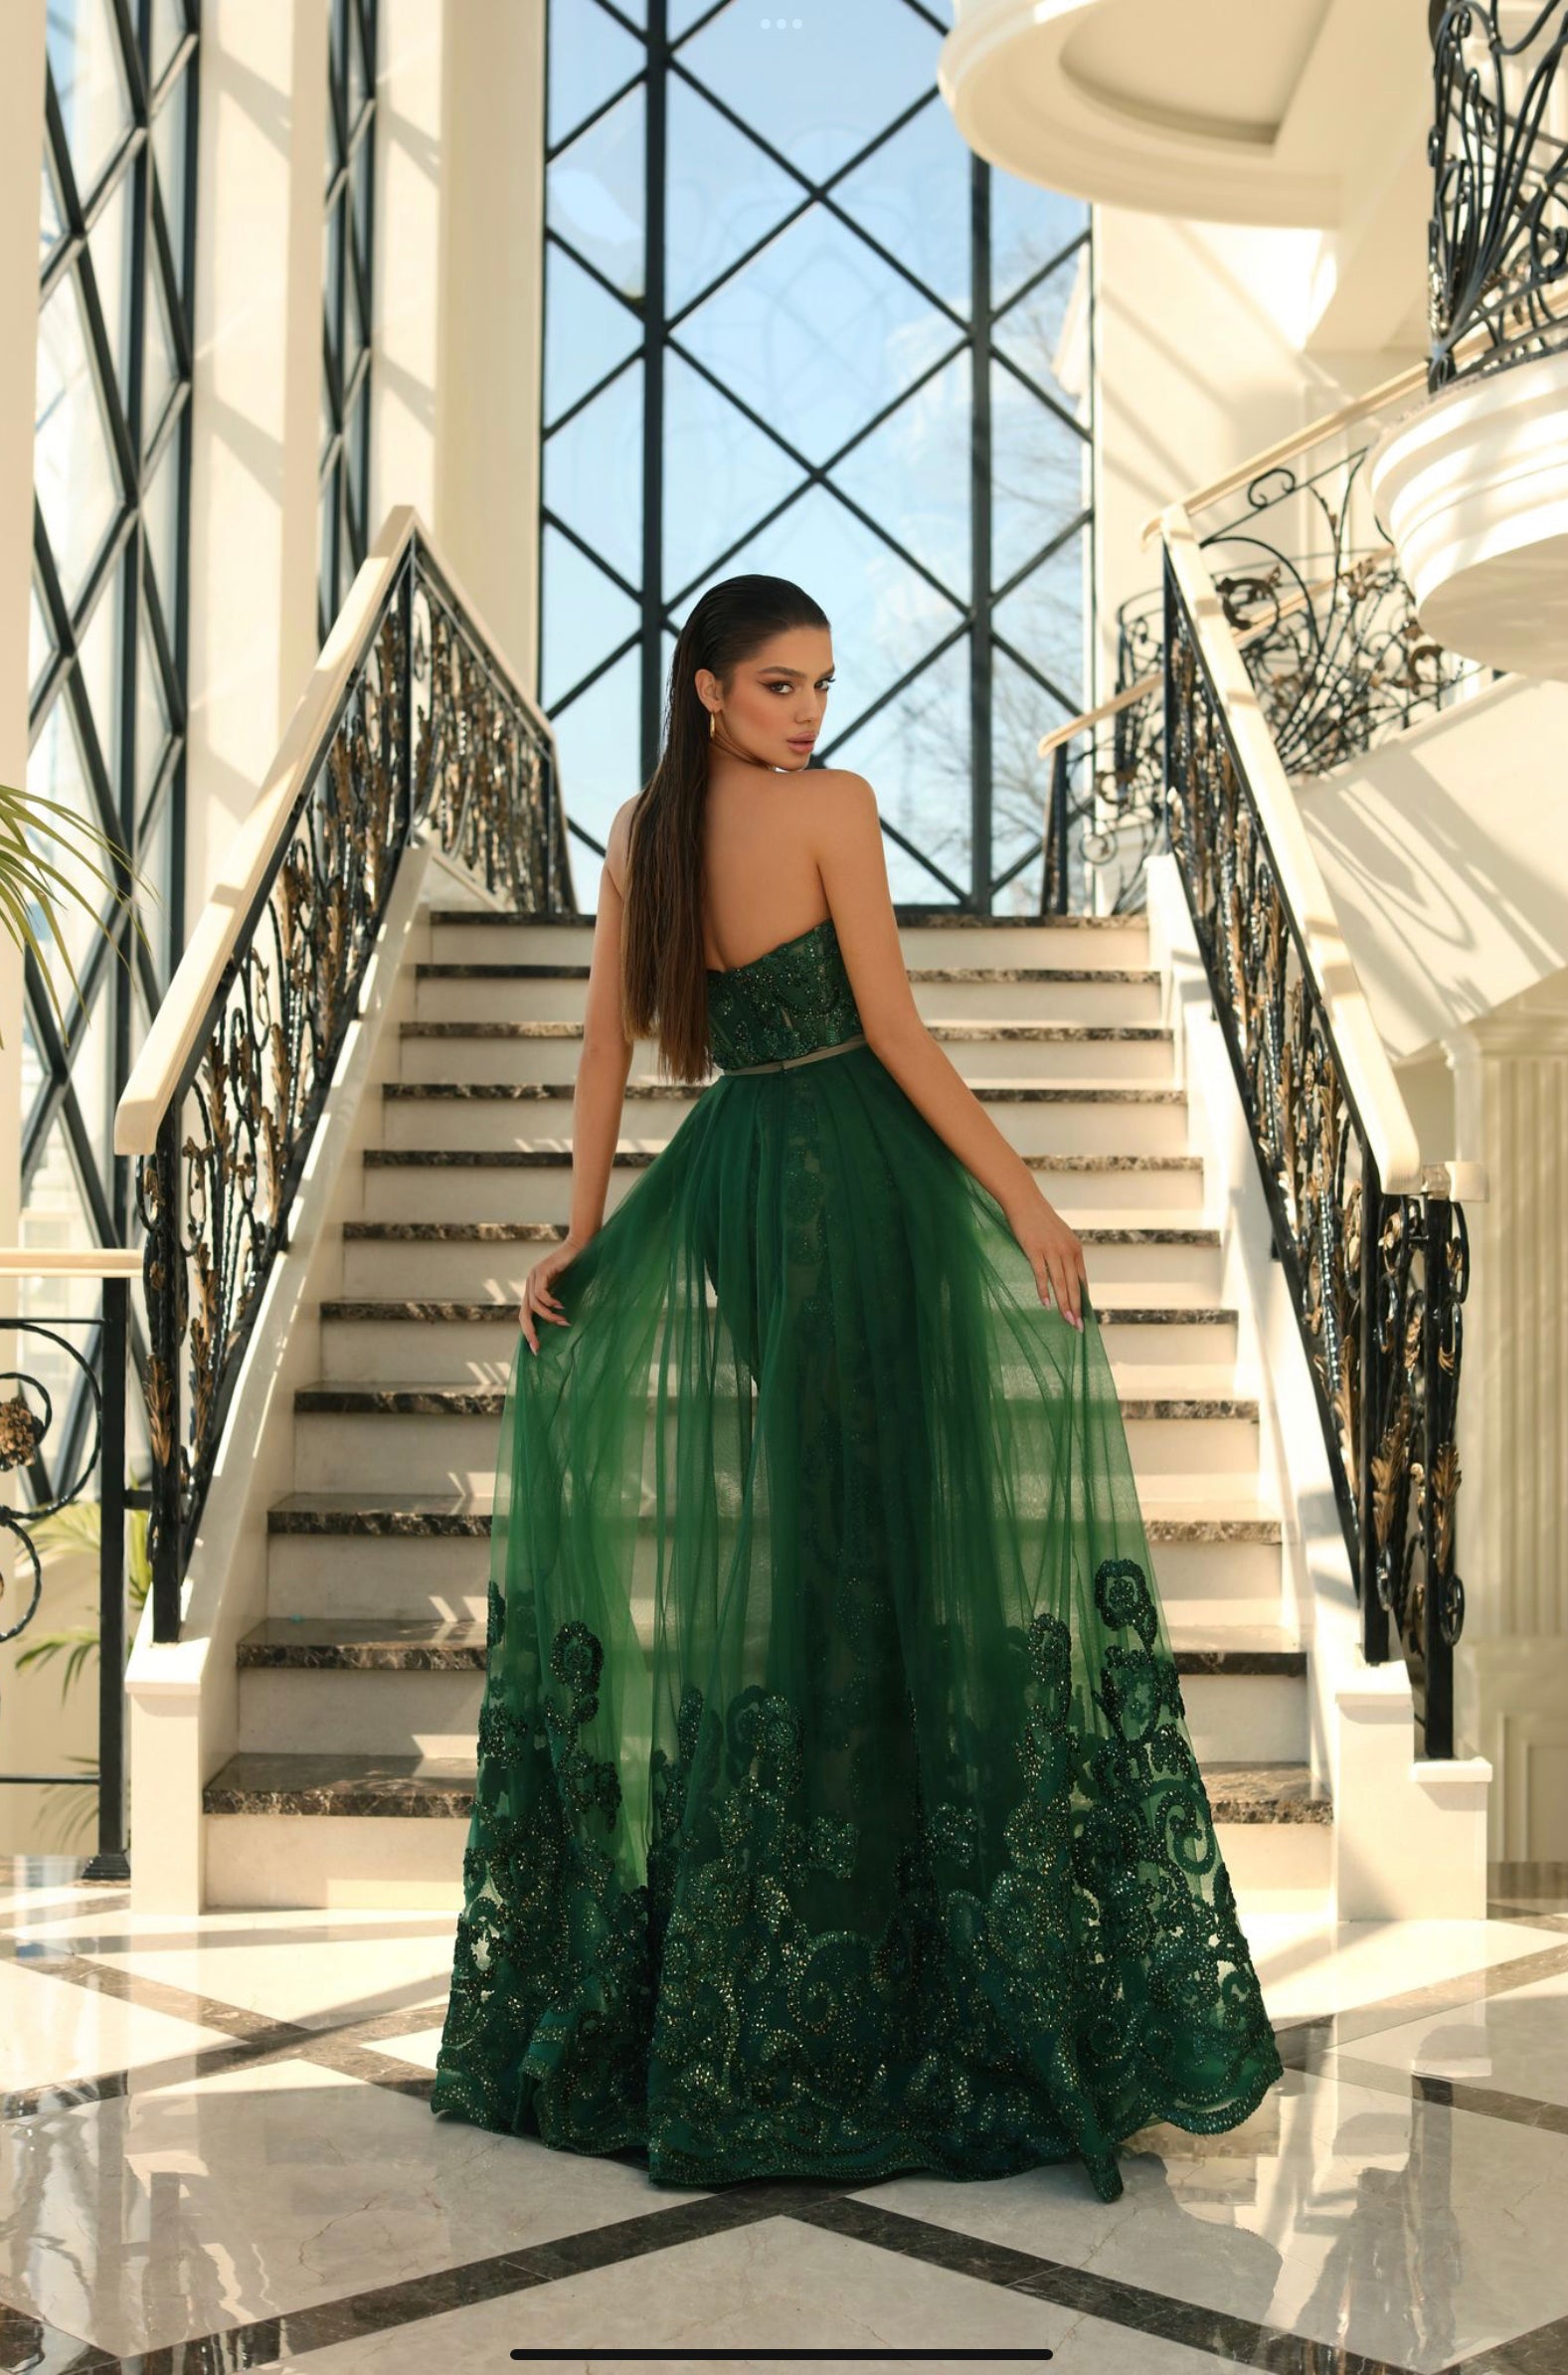 NC1003 by Nicoletta Black, Royal, Ruby, & Emerald Formal dress